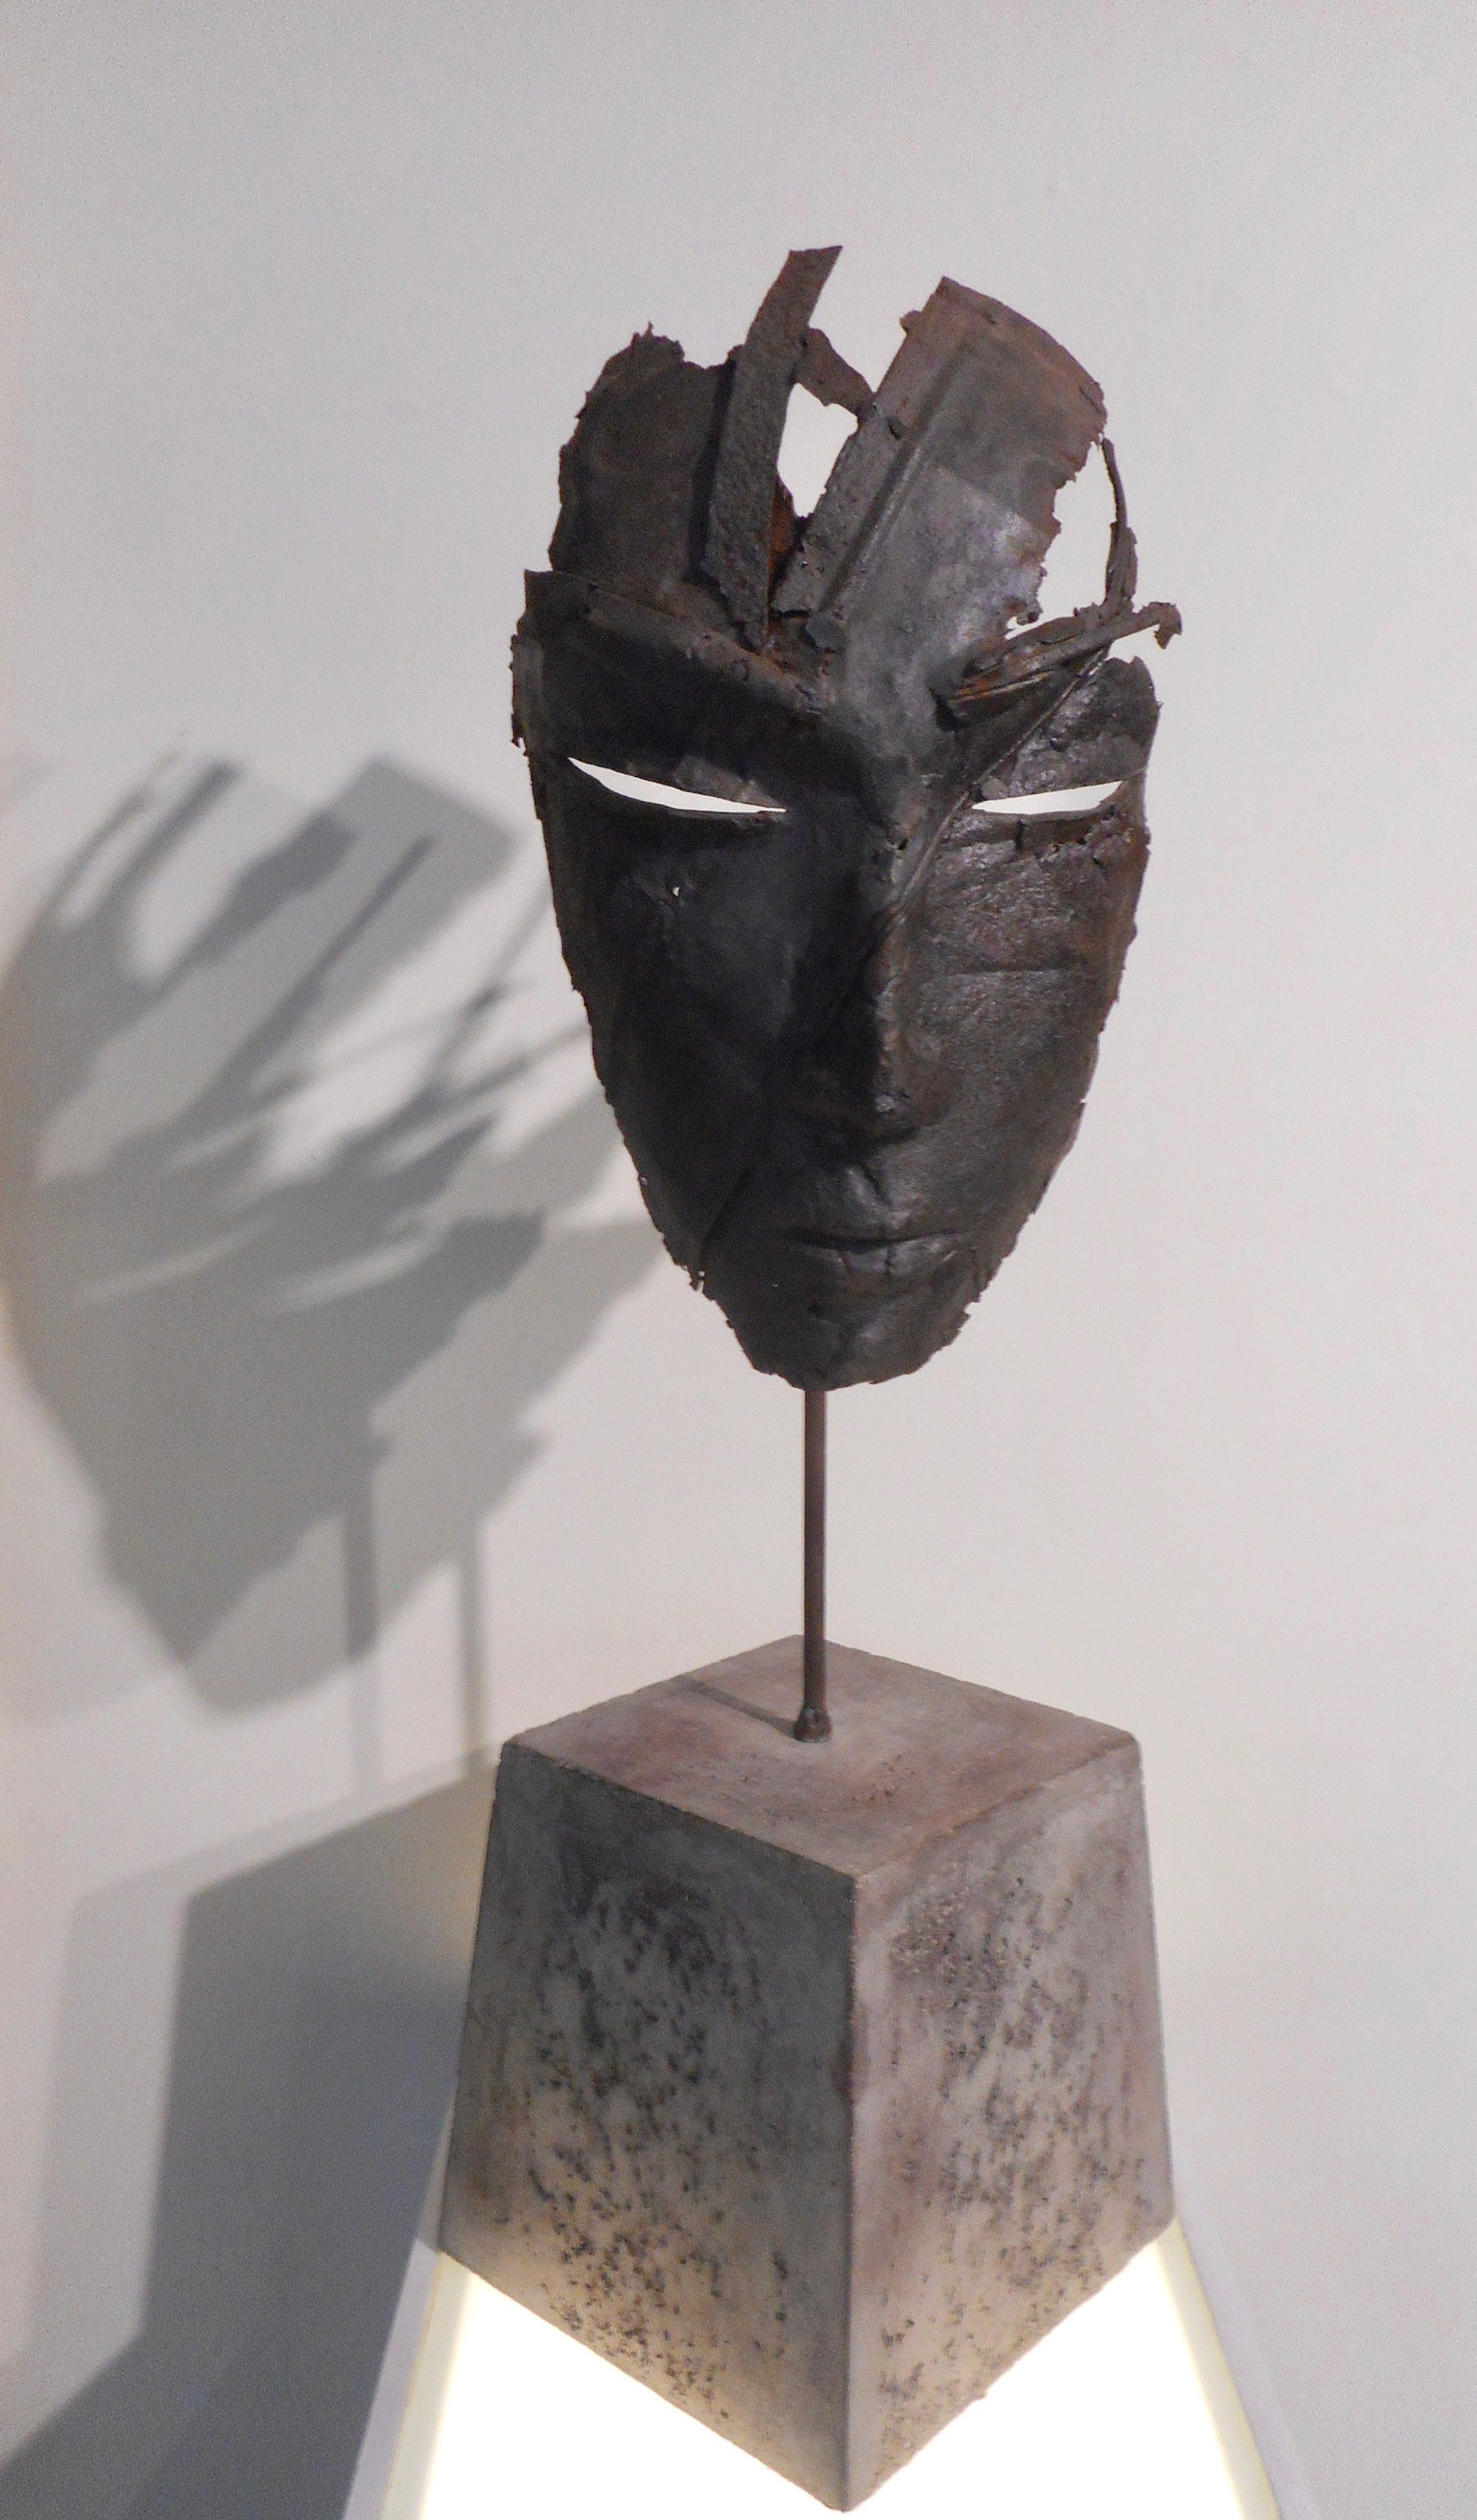 Mask IV by Anton Smit